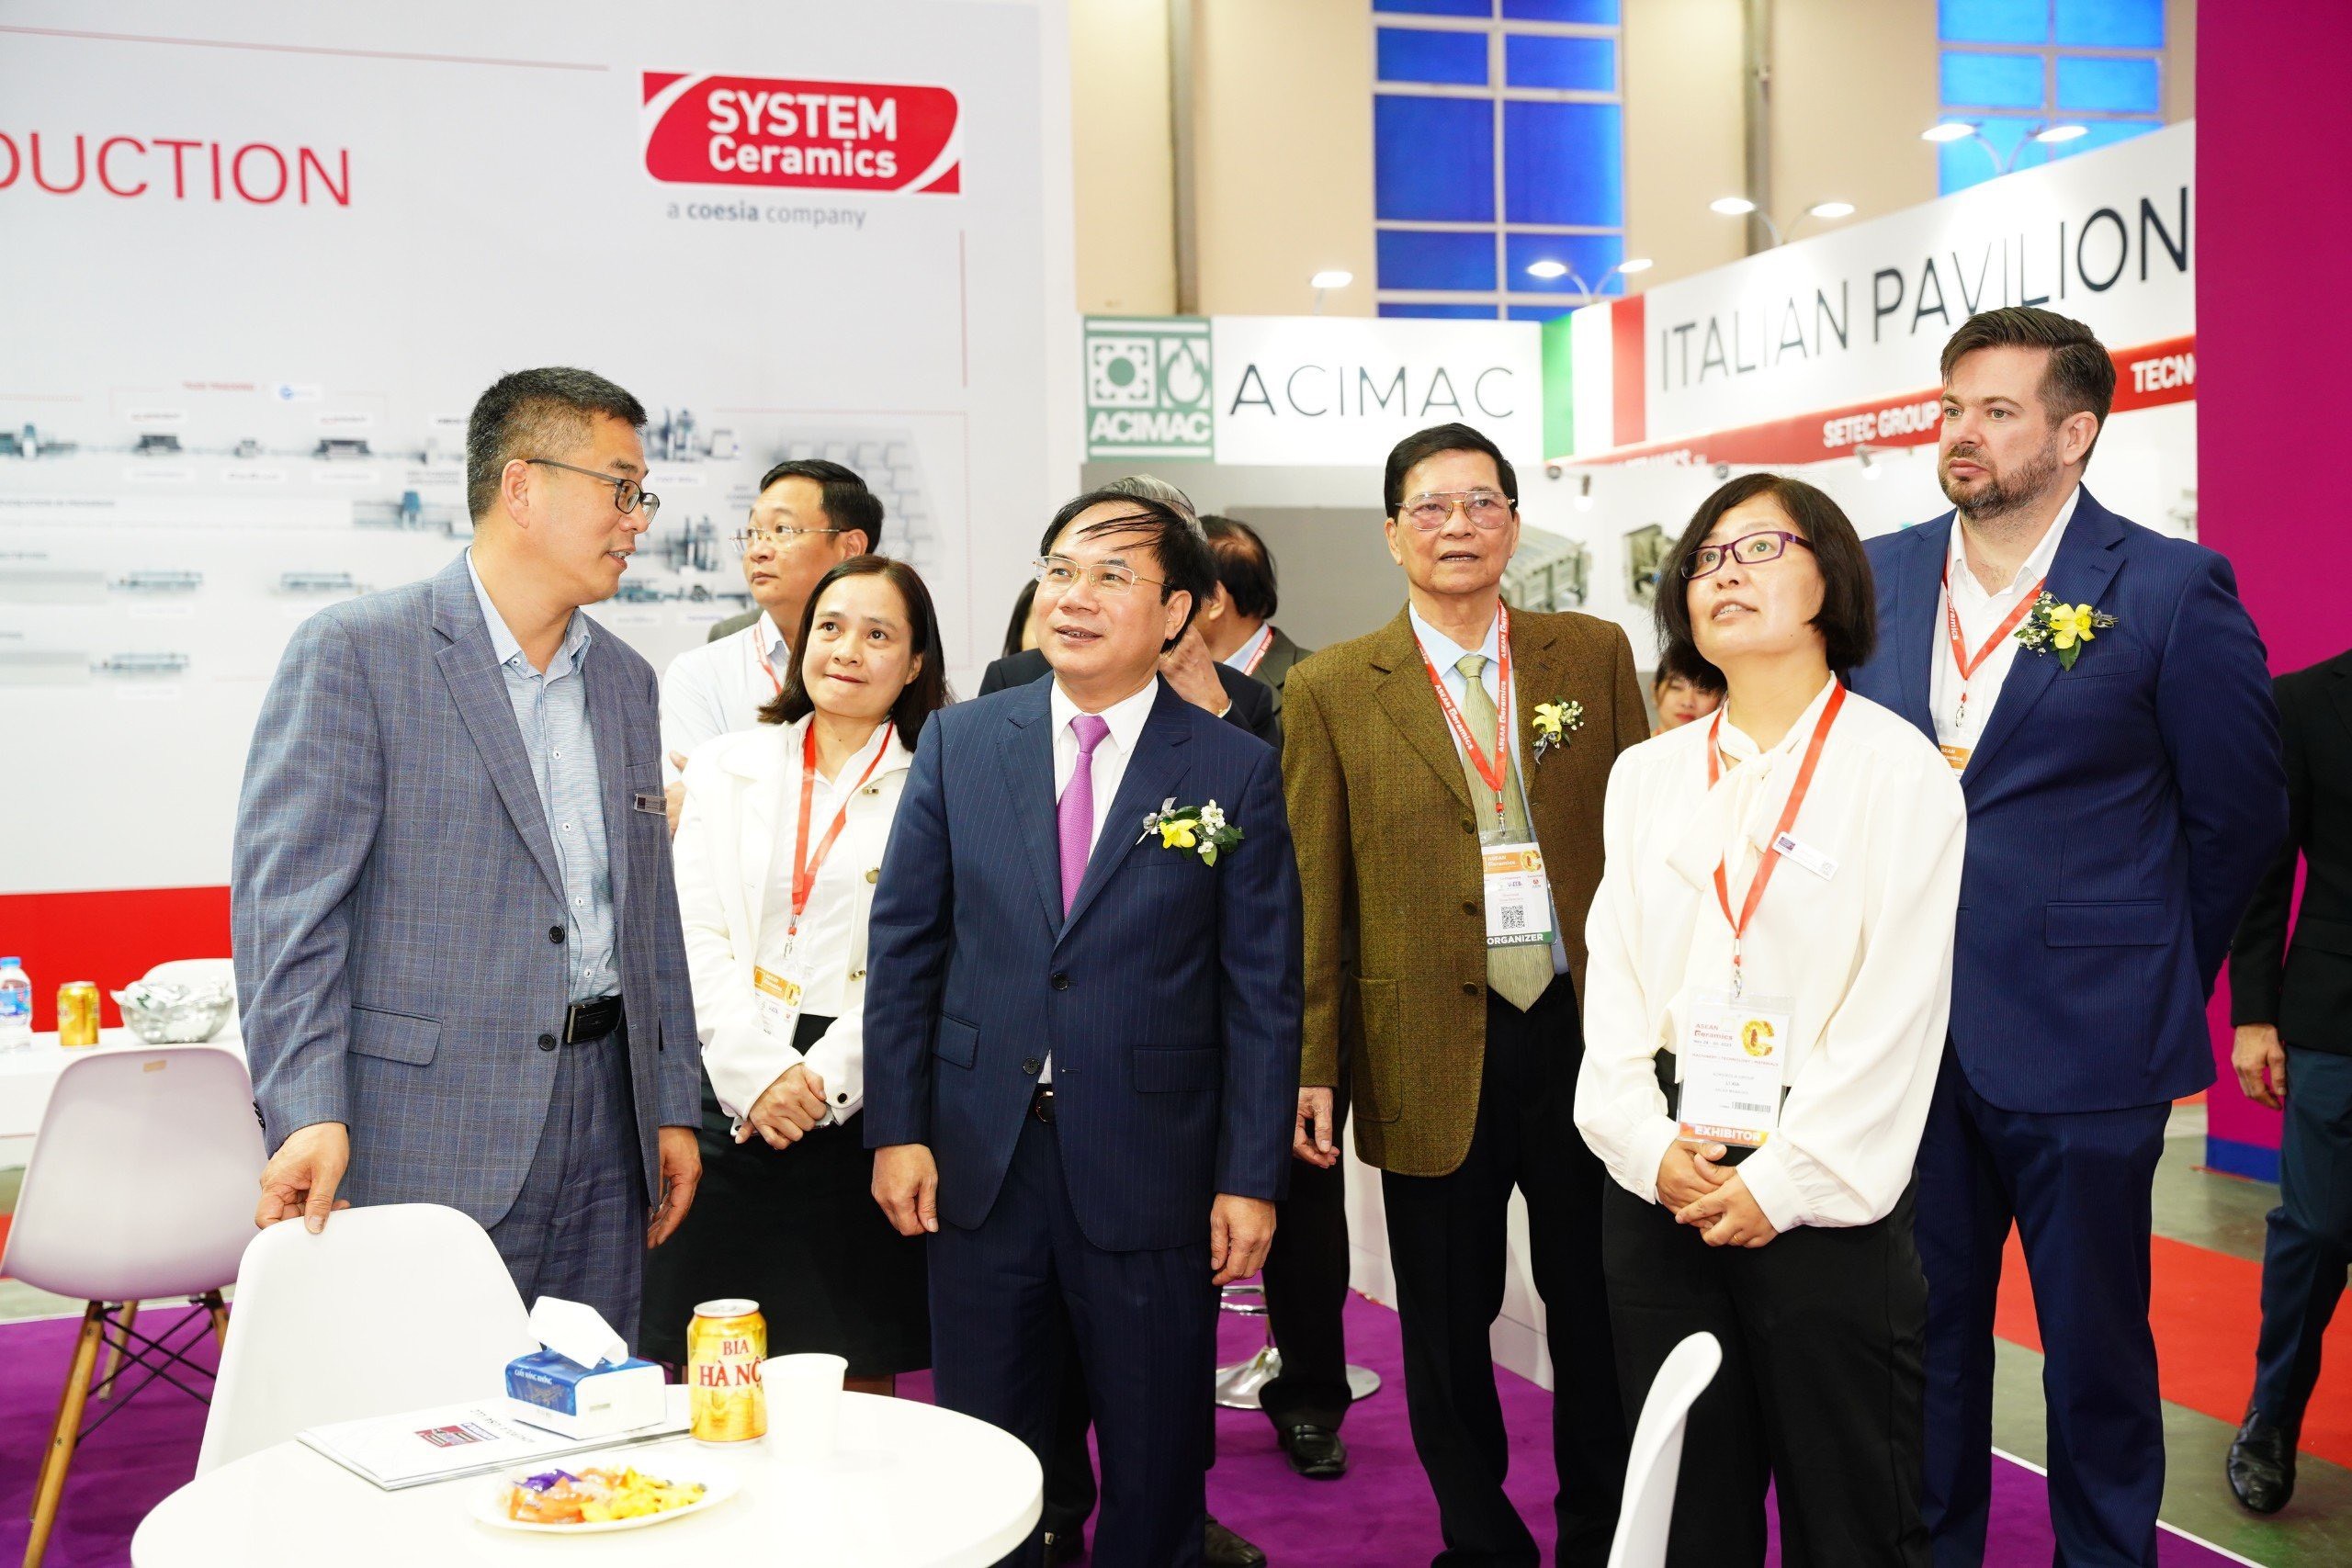 Thứ trưởng Bộ Xây dựng Nguyễn Văn Sinh cho biết, Trung bình hàng năm, công nghiệp sản xuất gốm sứ đã đóng góp hơn 3 tỷ USD/năm cho GDP của Việt Nam